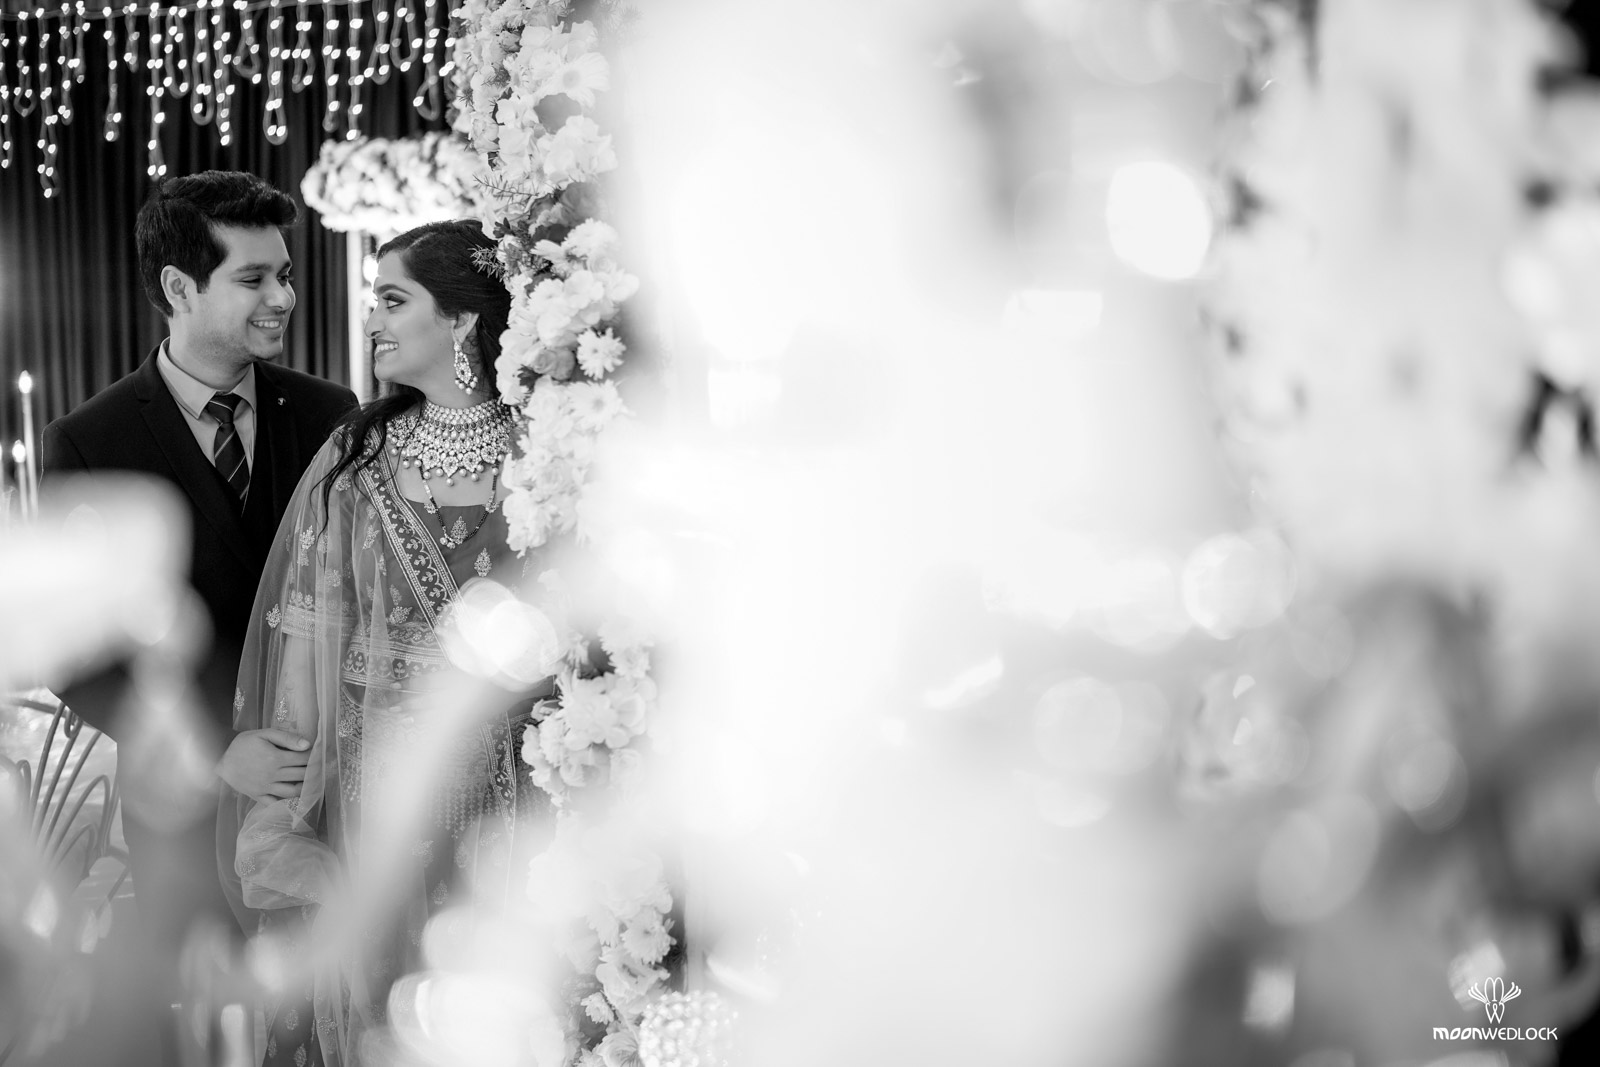 bangalore-wedding-photographers-moonwedlock (20)